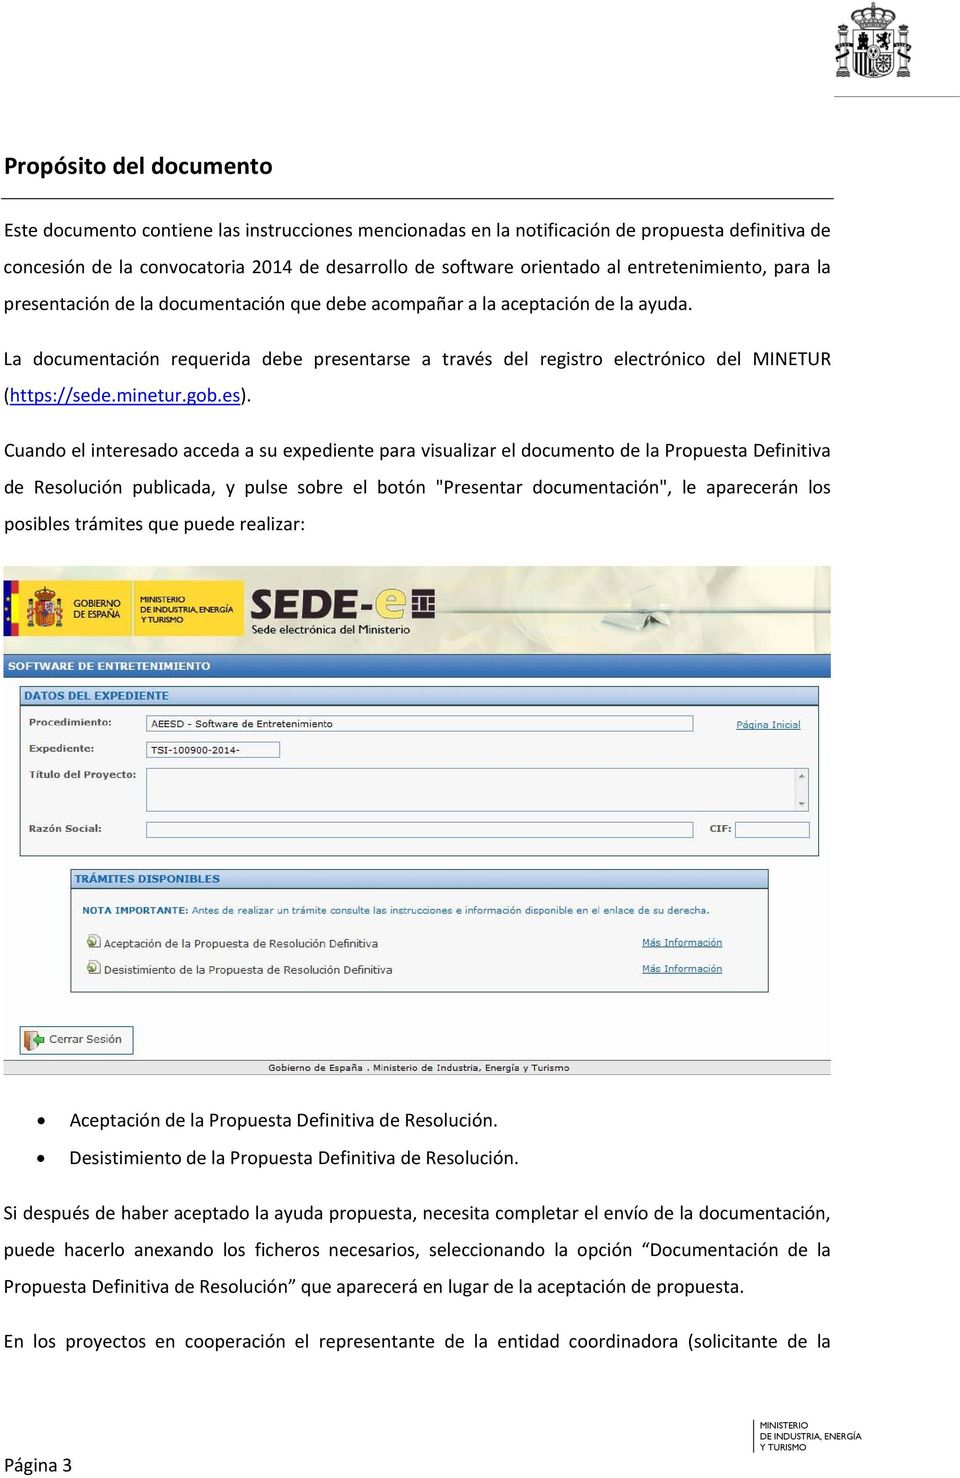 La documentación requerida debe presentarse a través del registro electrónico del MINETUR (https://sede.minetur.gob.es).